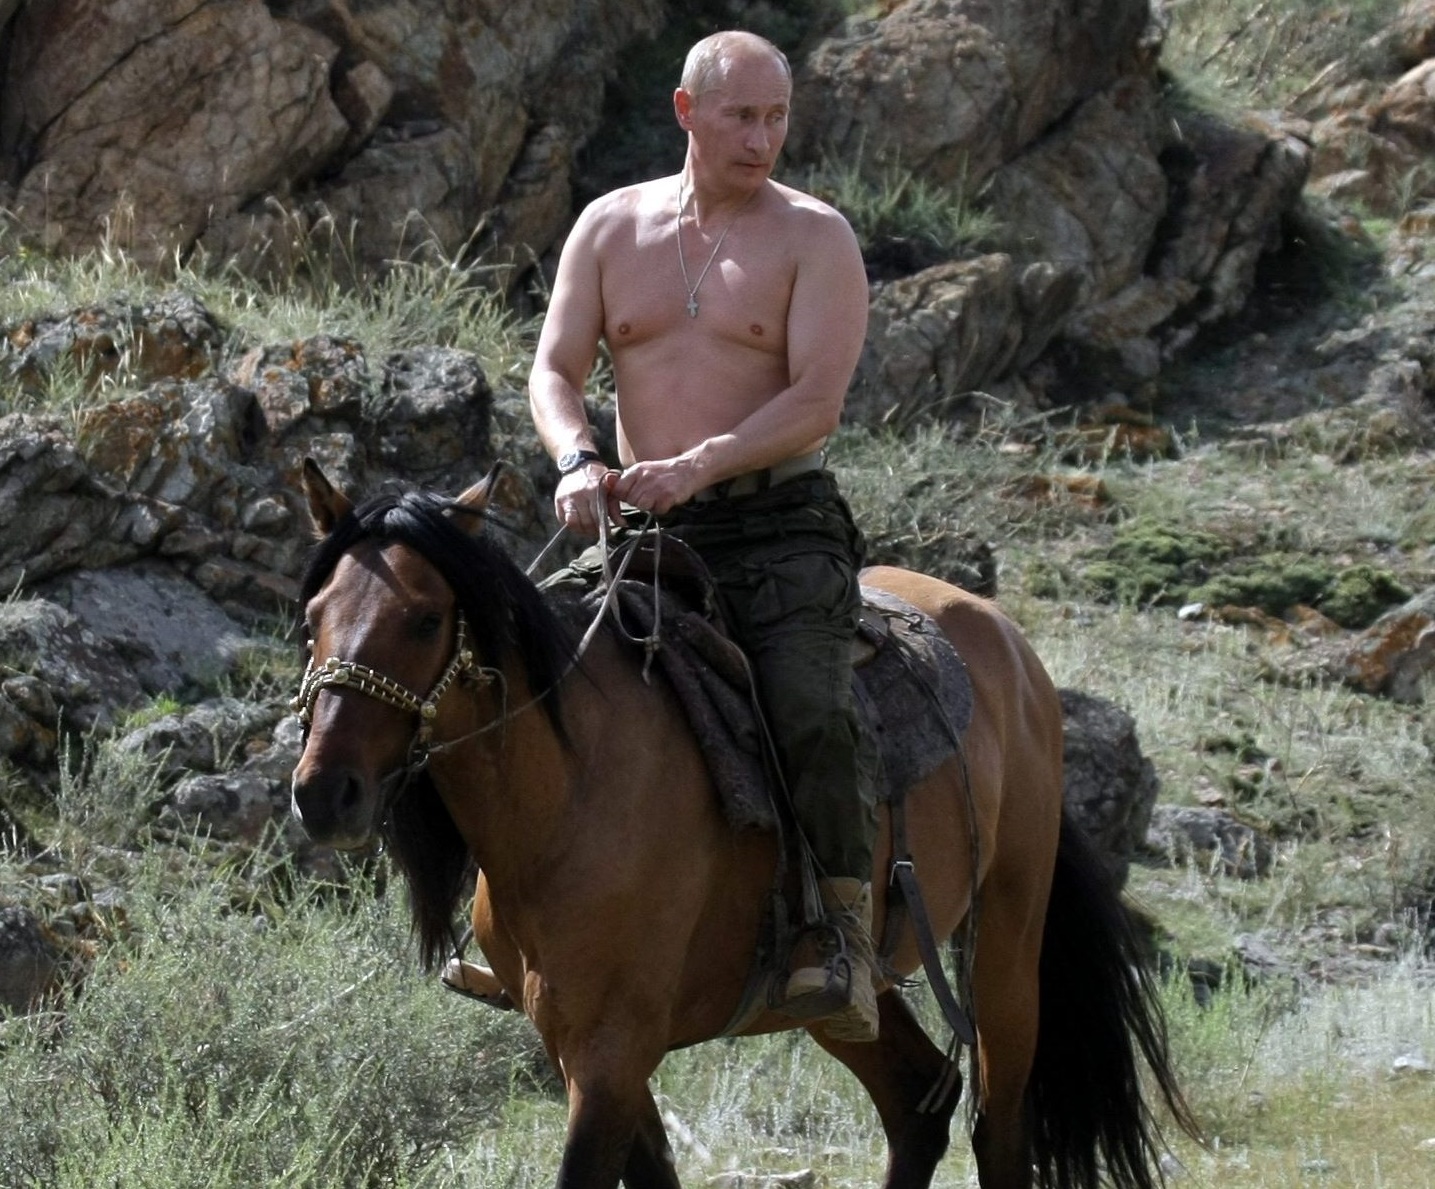 Путин.jpg